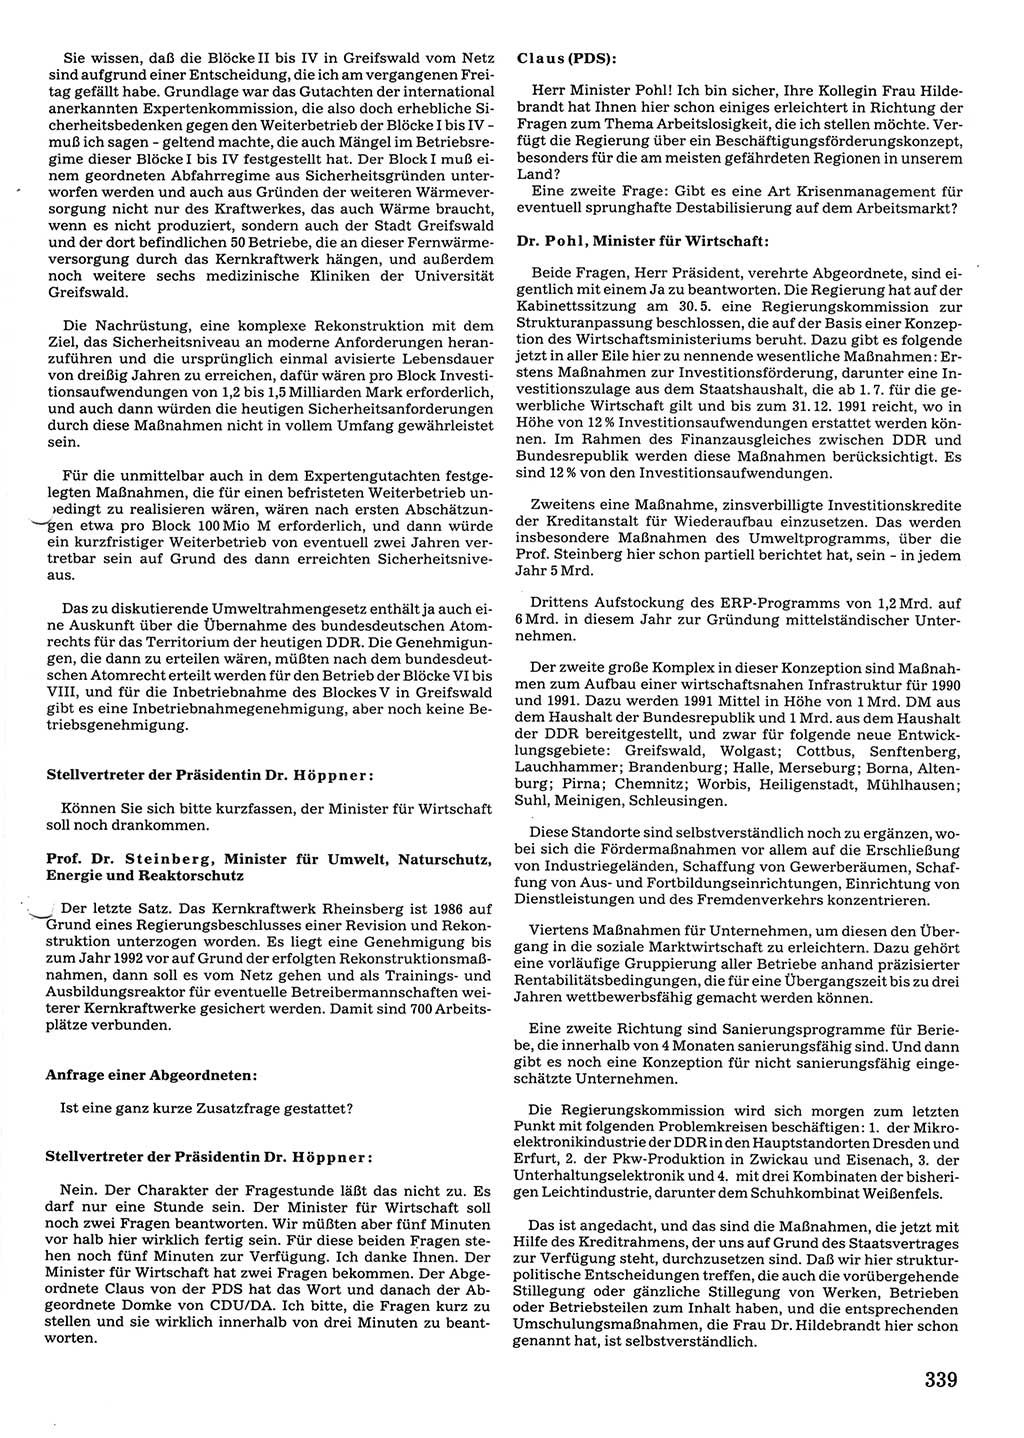 Tagungen der Volkskammer (VK) der Deutschen Demokratischen Republik (DDR), 10. Wahlperiode 1990, Seite 339 (VK. DDR 10. WP. 1990, Prot. Tg. 1-38, 5.4.-2.10.1990, S. 339)